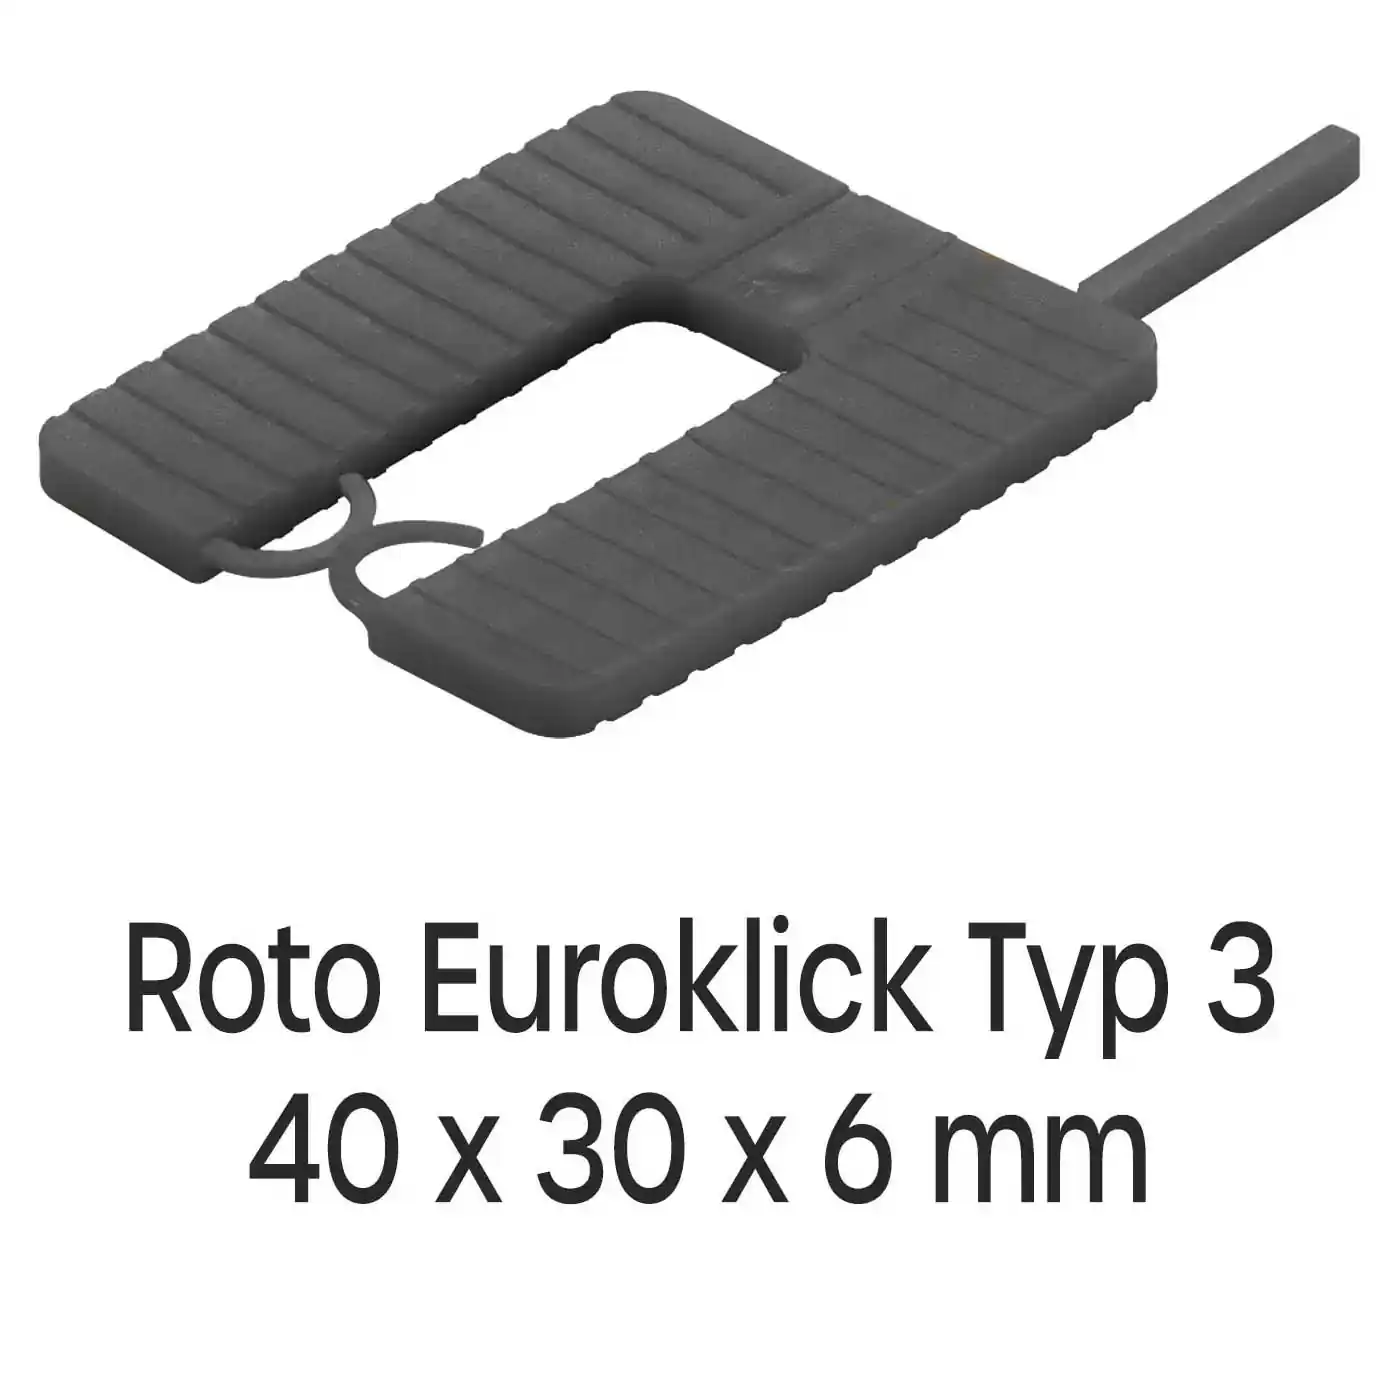 Distanzplatten Roto Euroklick Typ 3 40 x 30 x 6 mm 1000 Stück